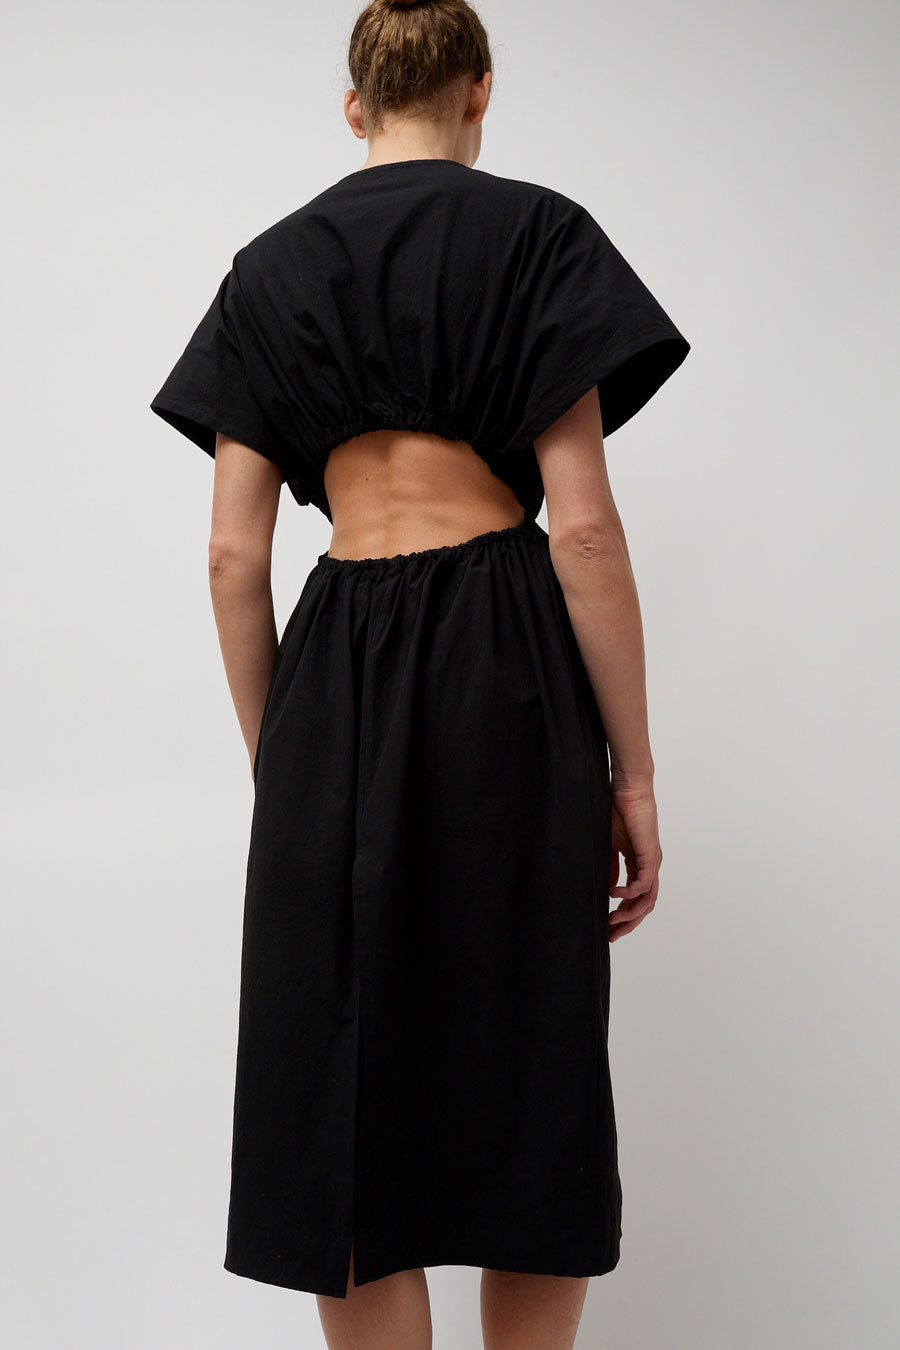 Modern Weaving Open Back Tunic Dress in Black